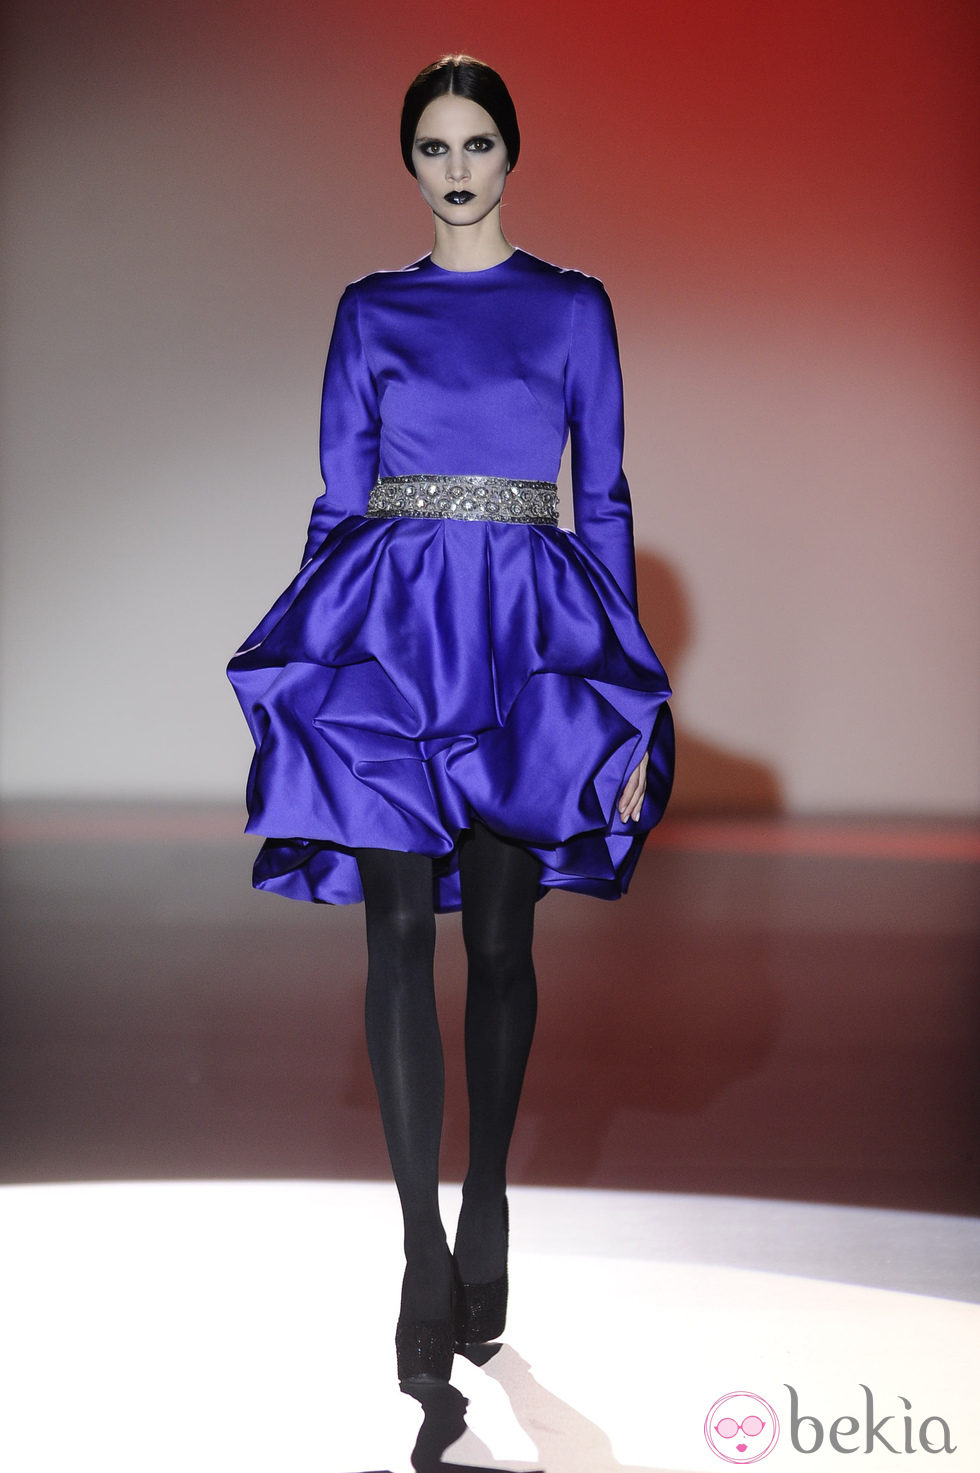 Vestido corto azul klein para la colección otoño/invierno 2013/2014 de Hannibal Laguna en la Madrid Fashion Week